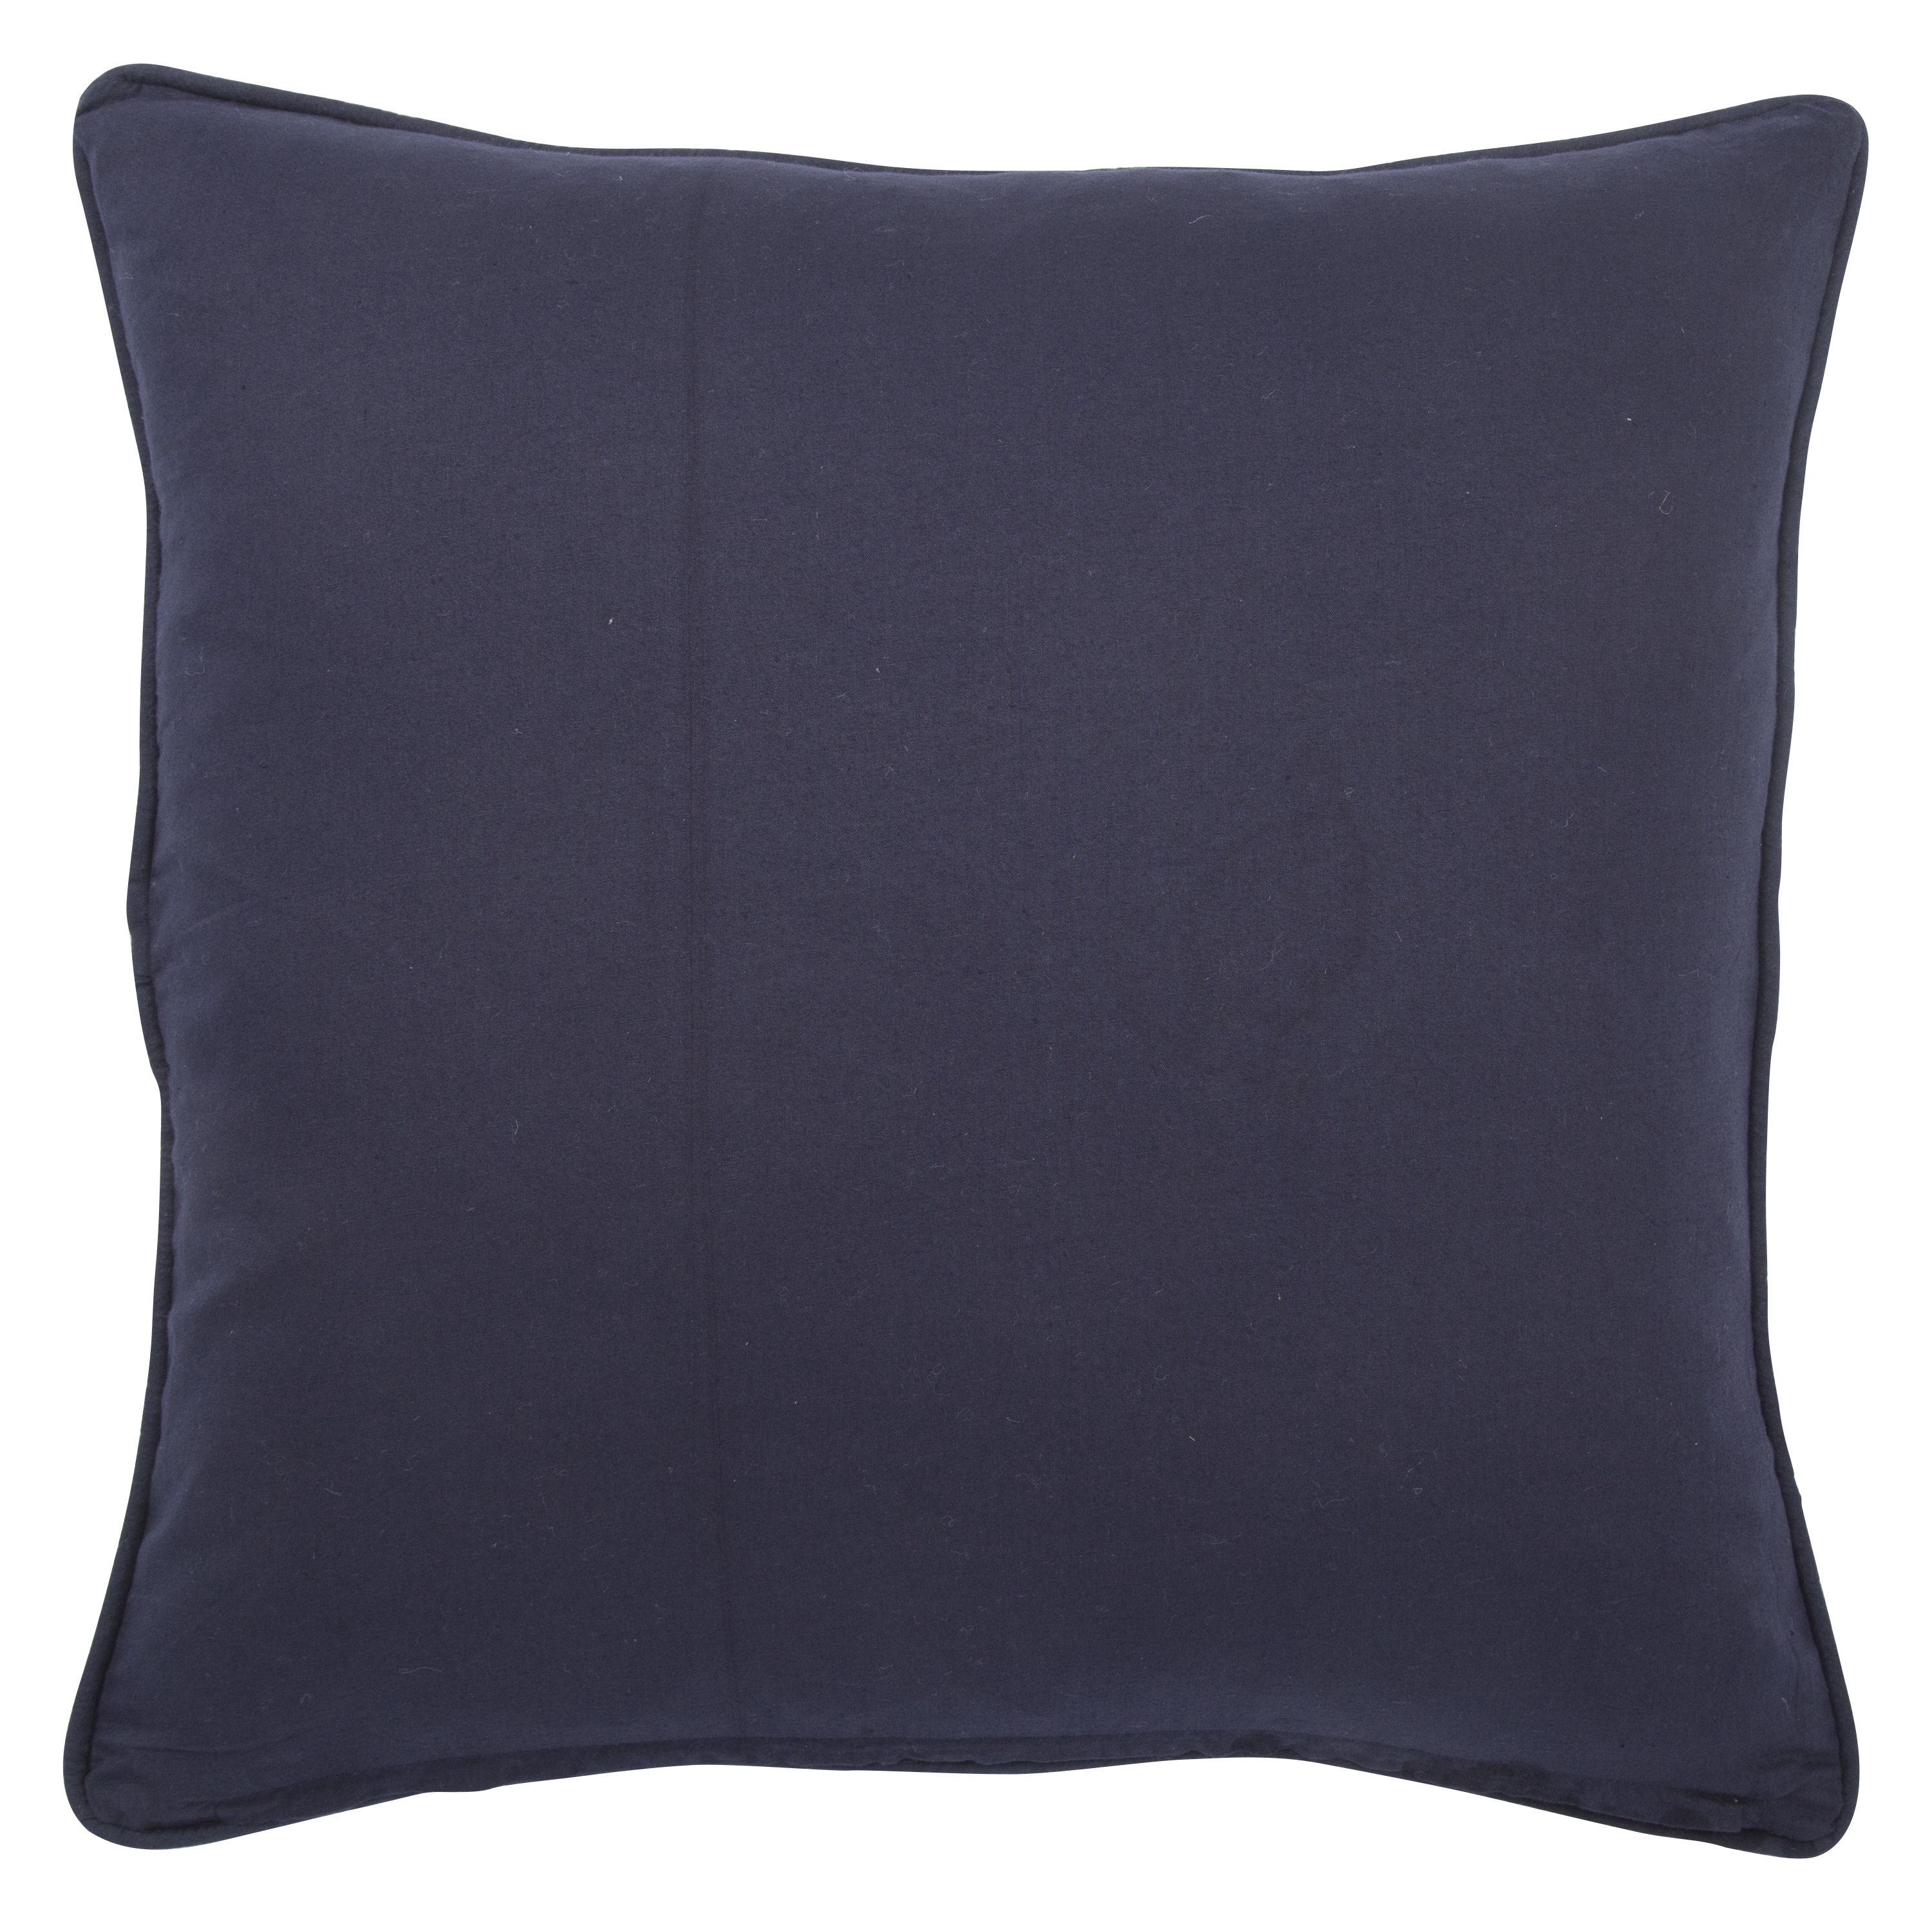 Design (US) Navy 20"X20" Pillow - Image 1